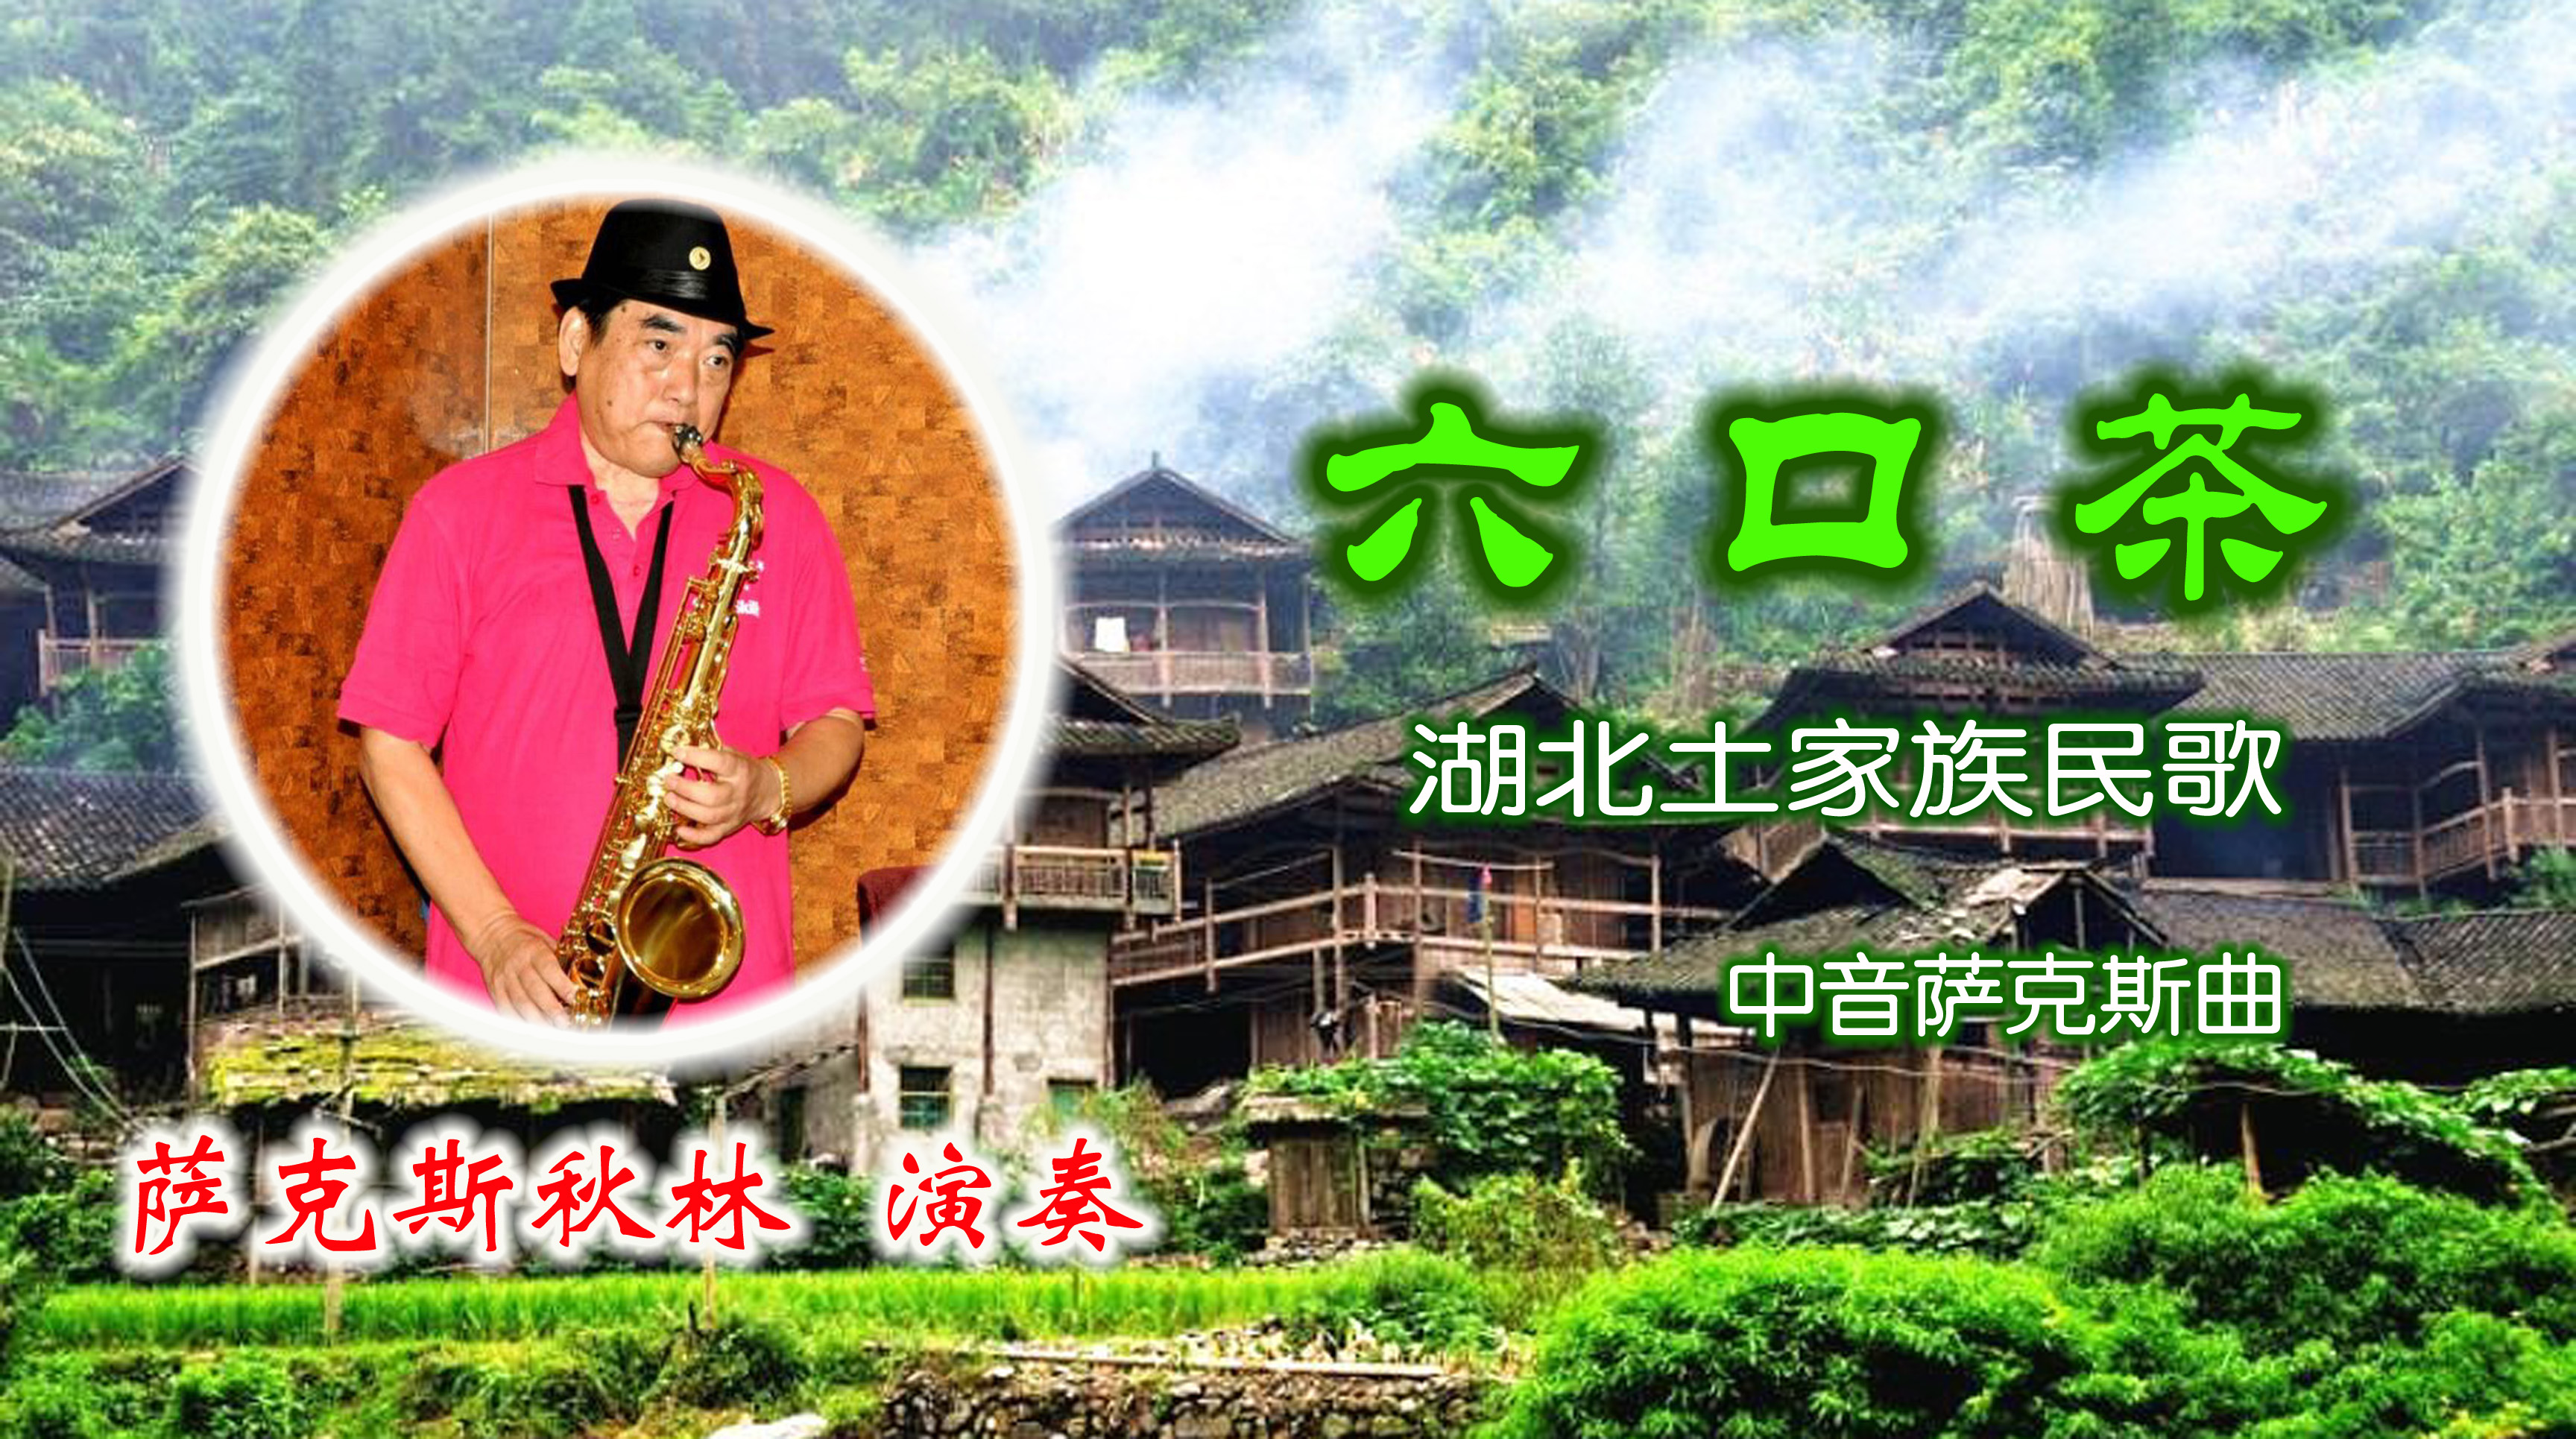 六口茶 - 萨克斯秋林 - 5sing中国原创音乐基地